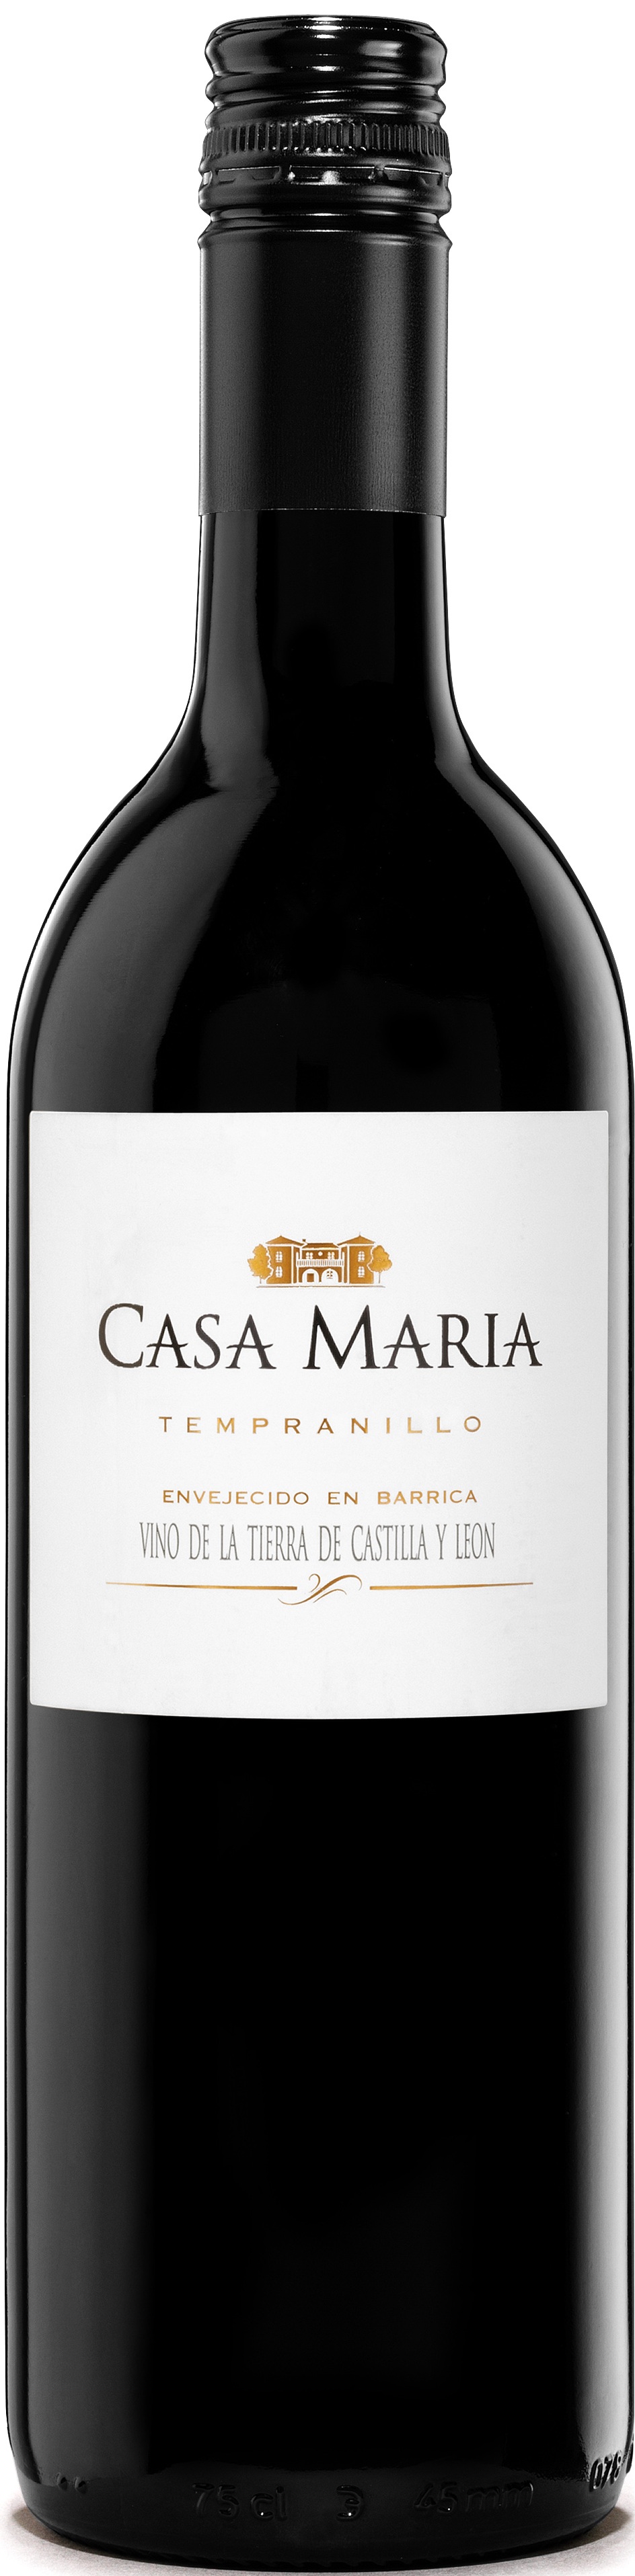 Logo Wein Casa María Roble